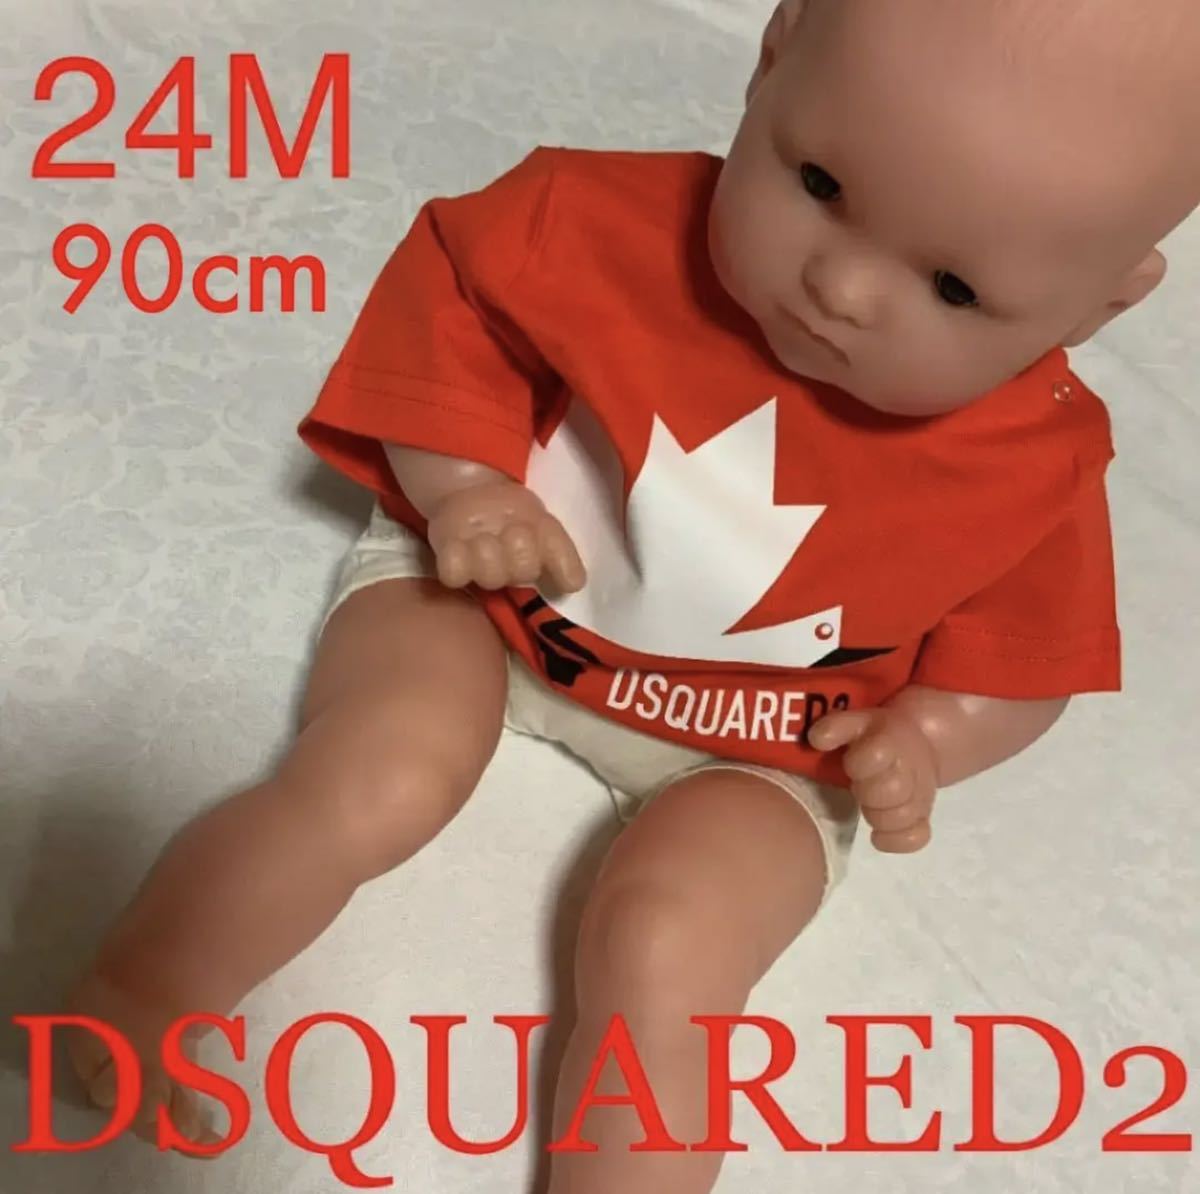 洗練されたデザイン DSQUARED2 Tシャツ レッド 24M 90cm DQ0176 D00MV